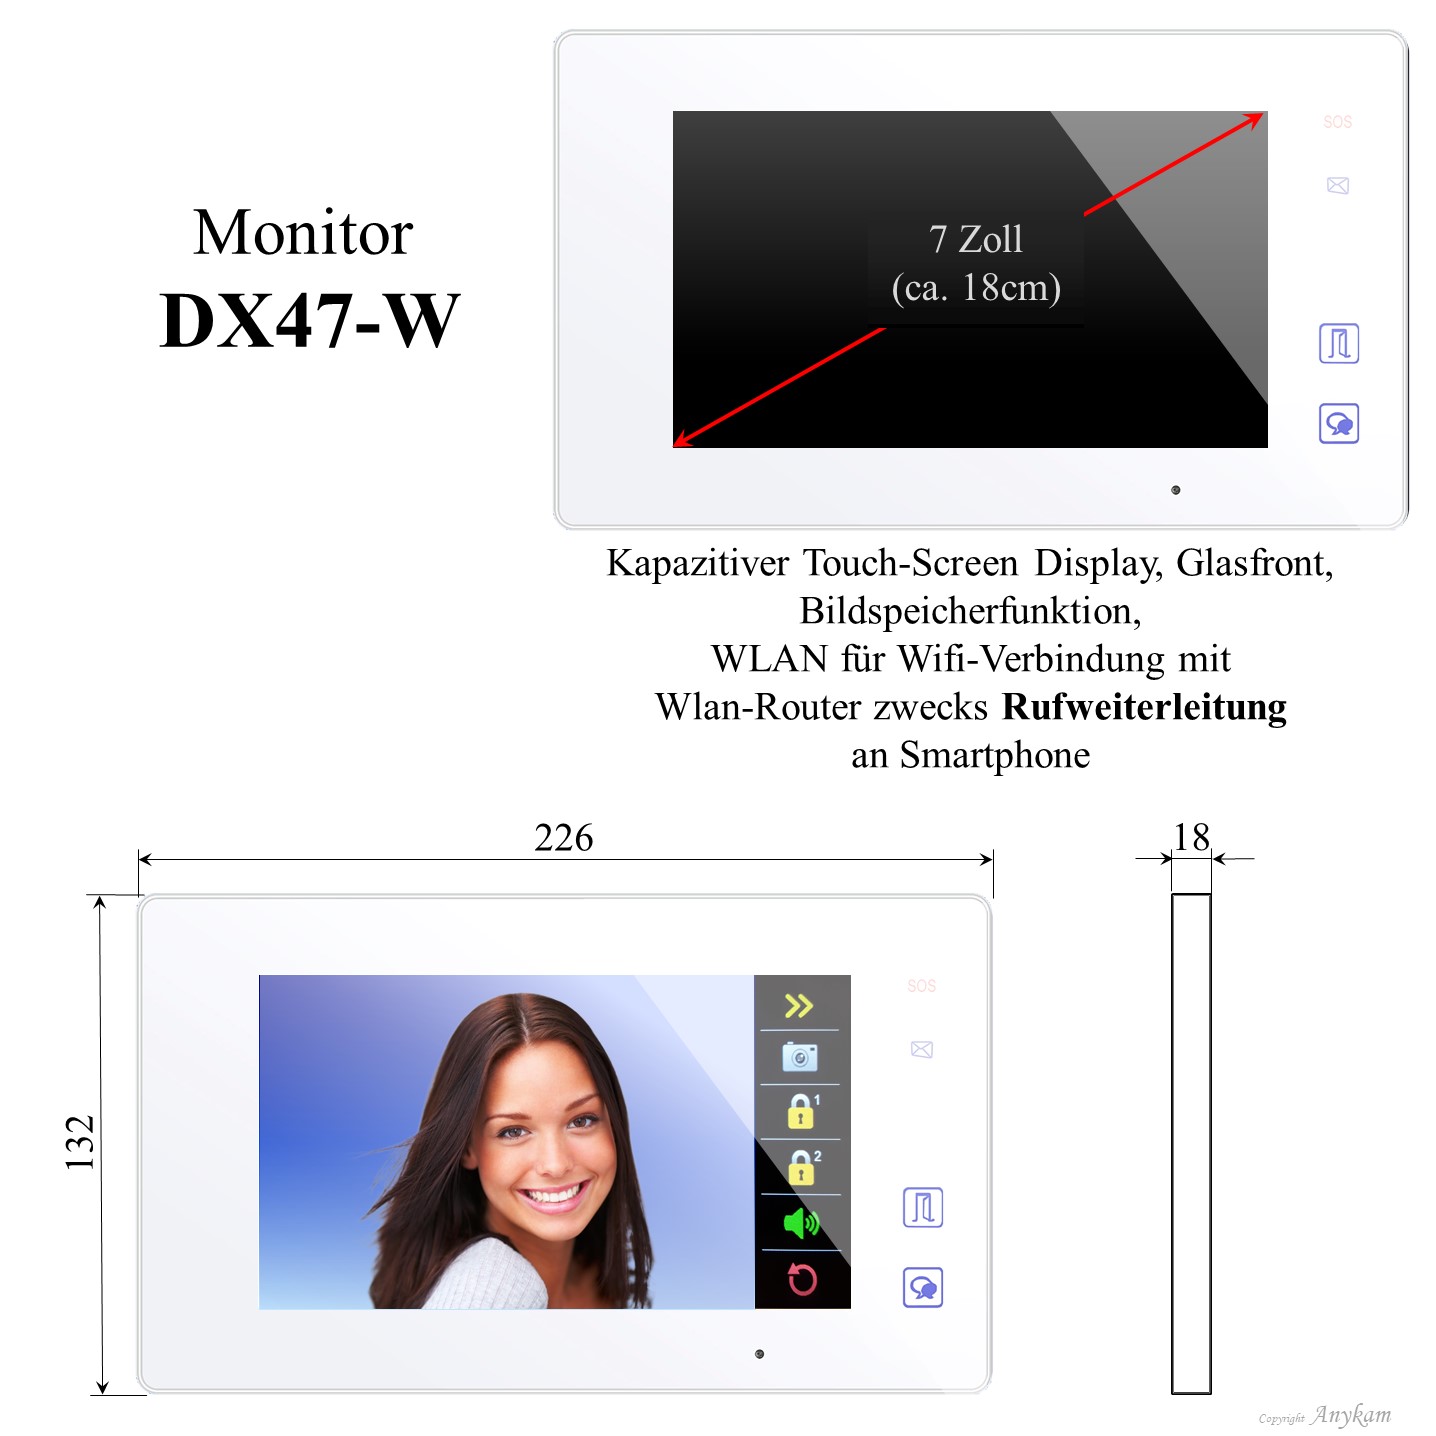 Monitor DX47-W, Innenstation der Videosprechanlage mit 2Draht Technik